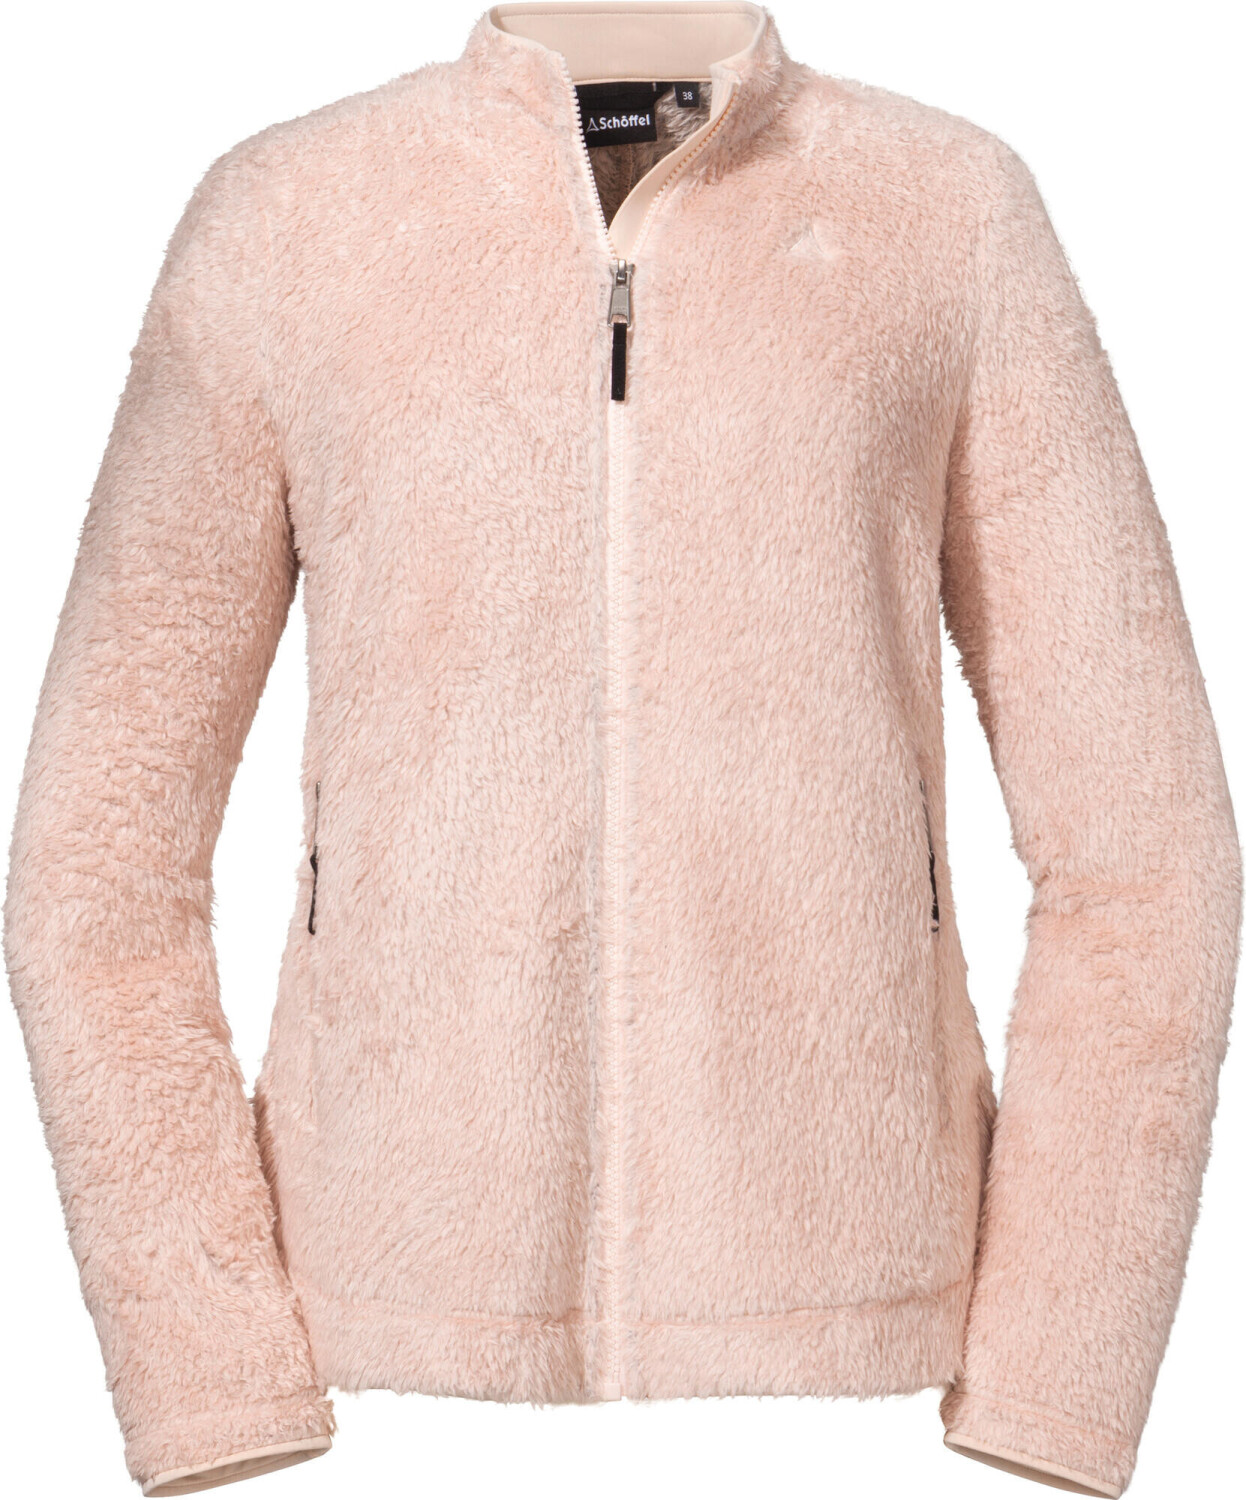 Schöffel Fleece Jacket Southgate L ab 70,35 € | Preisvergleich bei